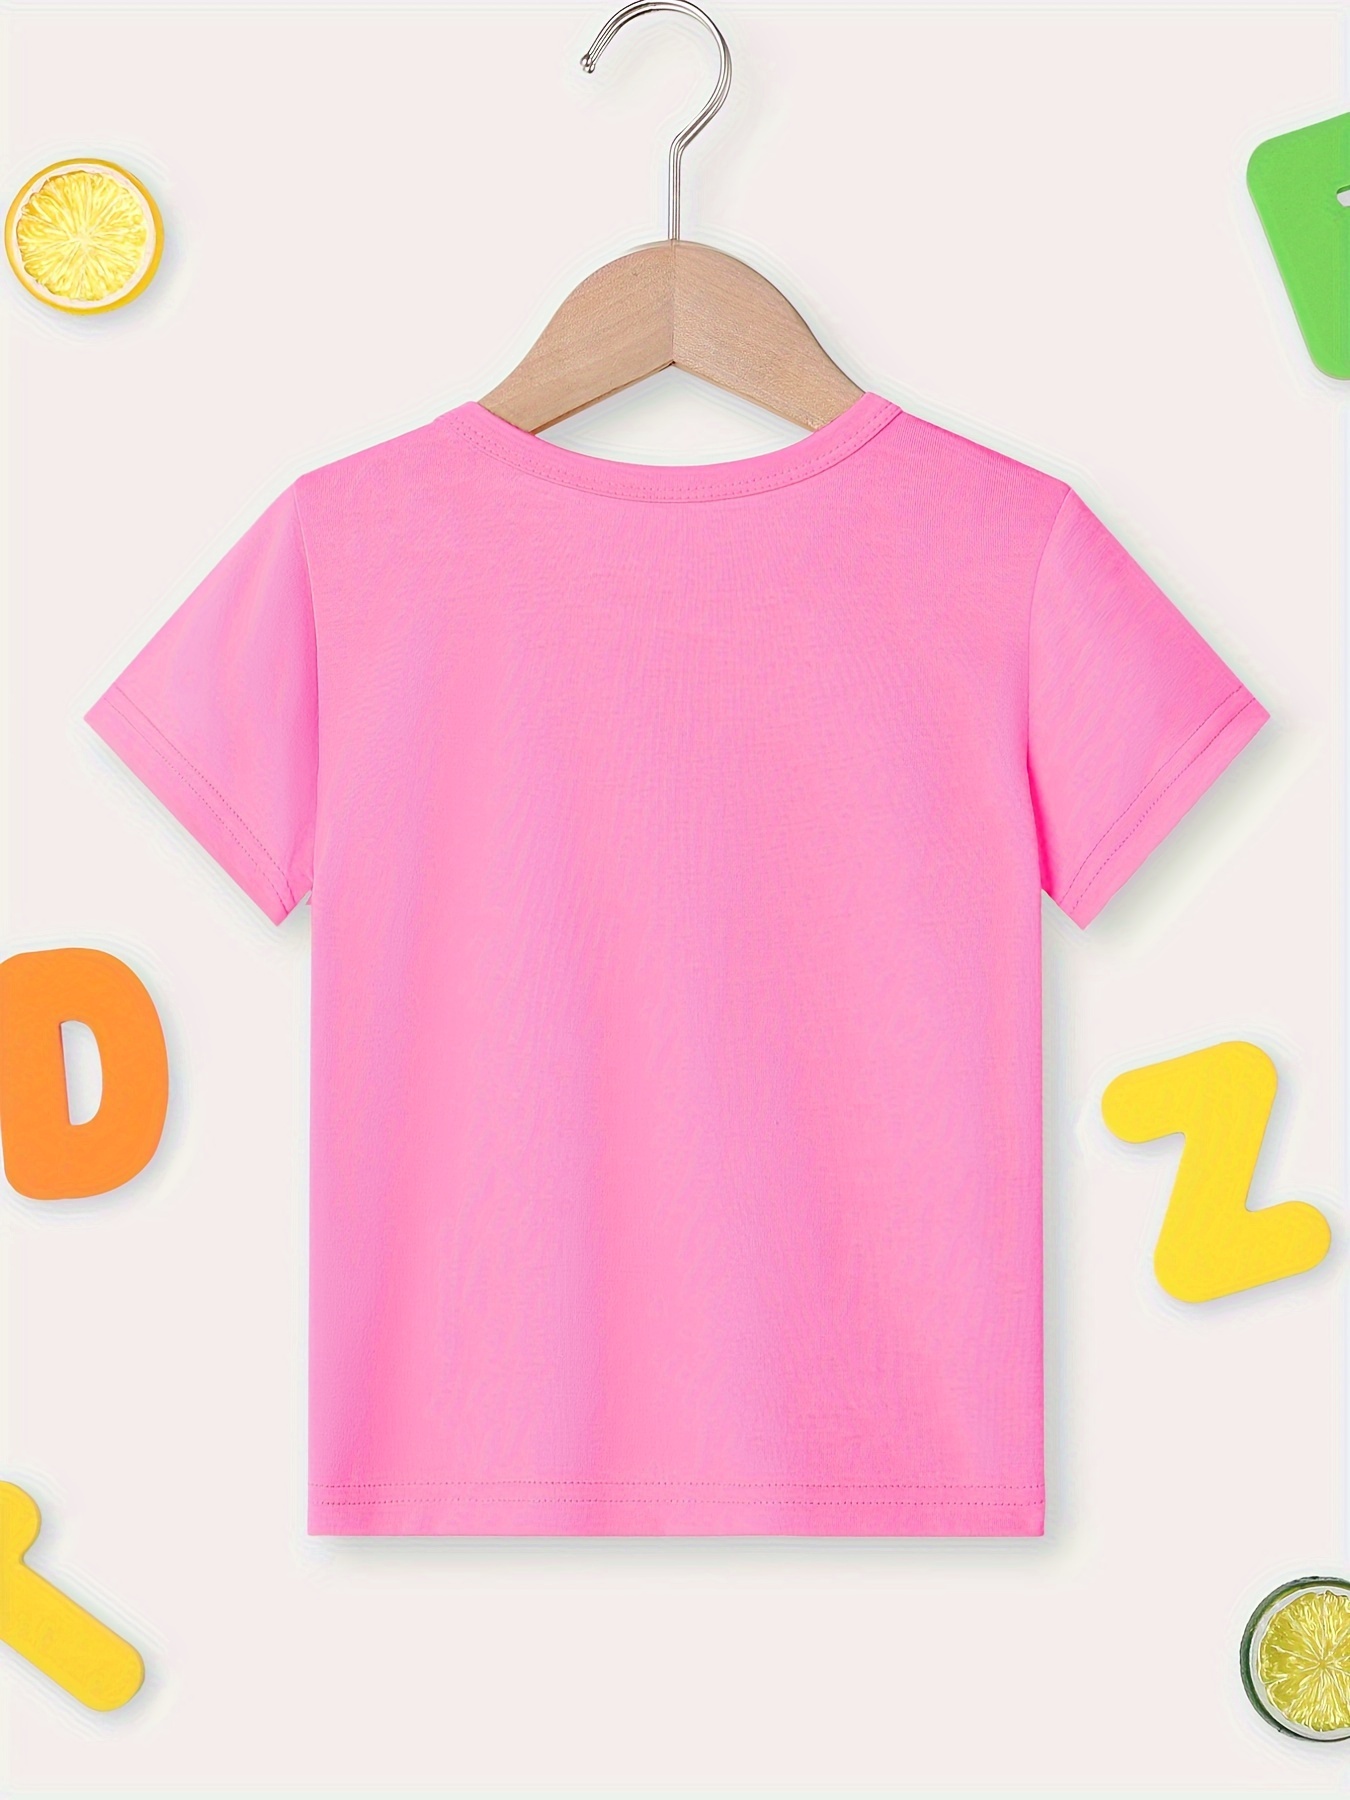 Camiseta niña color rosa con dibujo - MIA FASHION KIDS